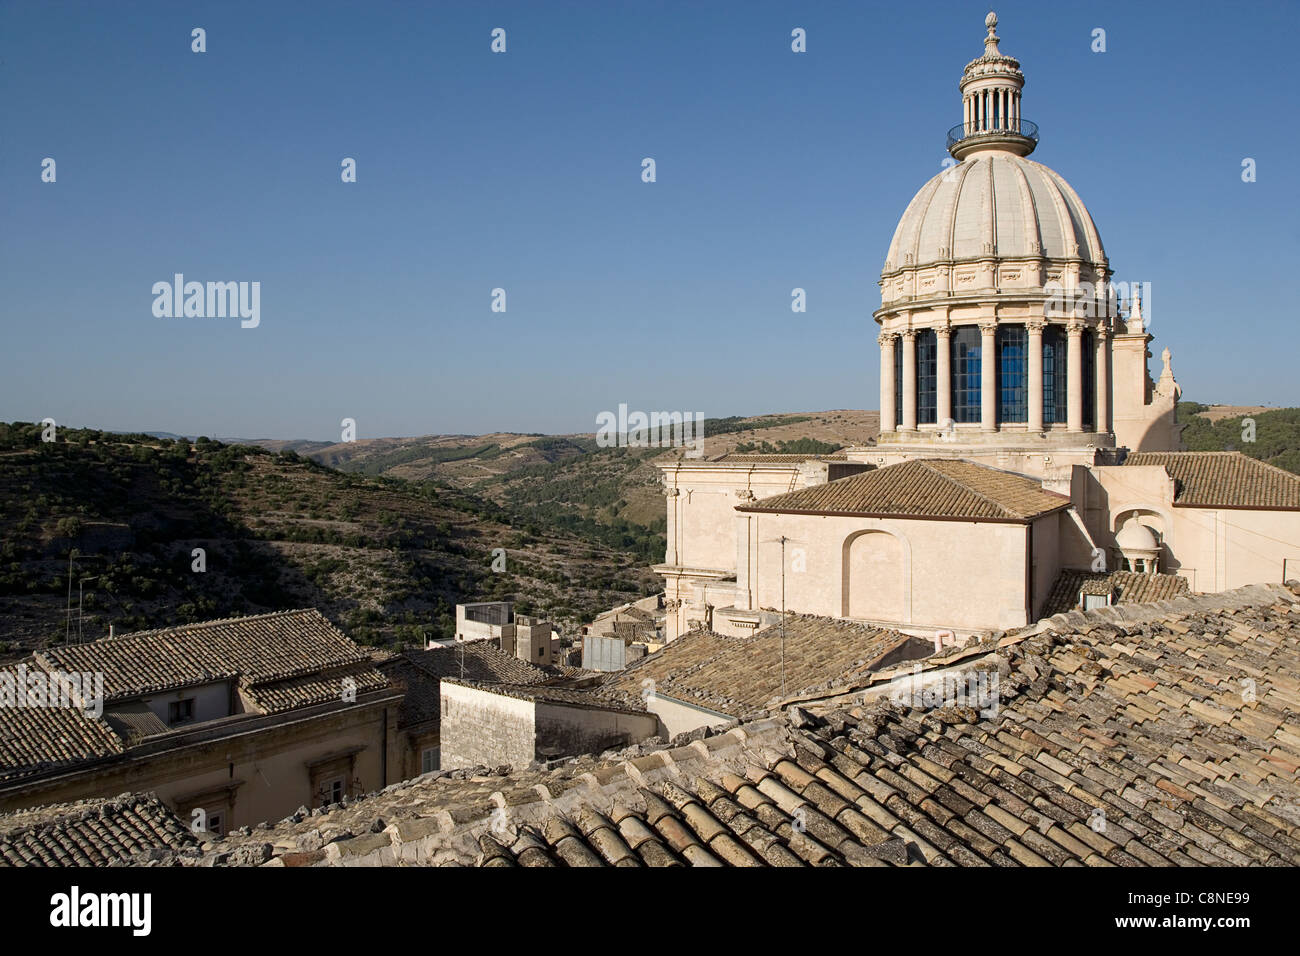 Italy, Sicily, Ragusa Ibla, Duomo di San Giorgio Stock Photo